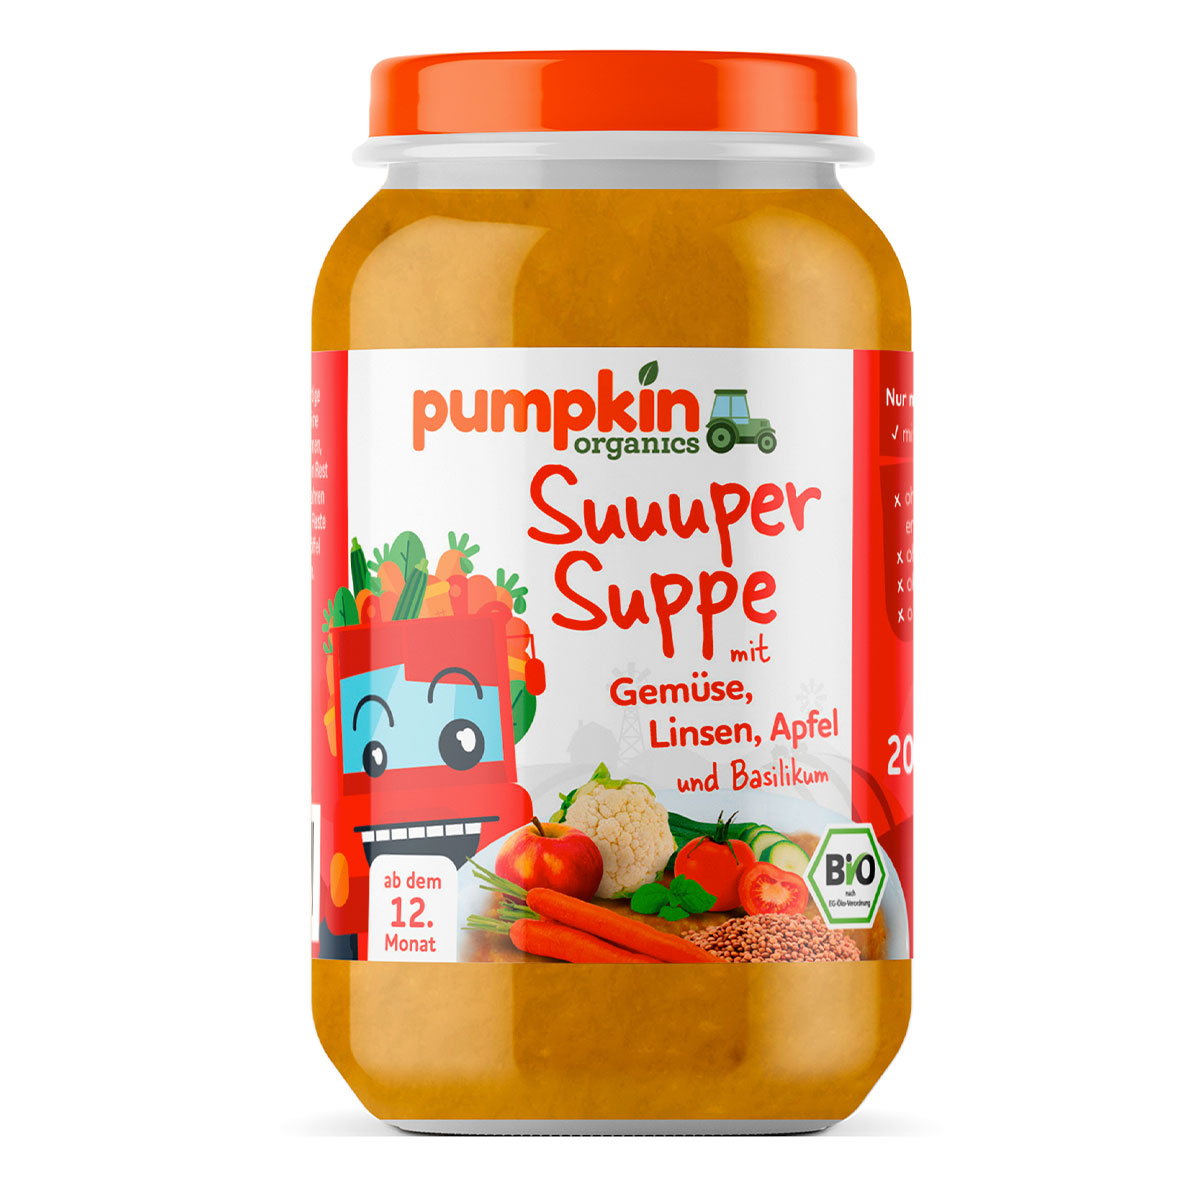 Suuuper Suppe mit Gemüse, Linsen, Apfel und Basilikum ab 12. Monat, Bio - Pumpkin Organics 200ml